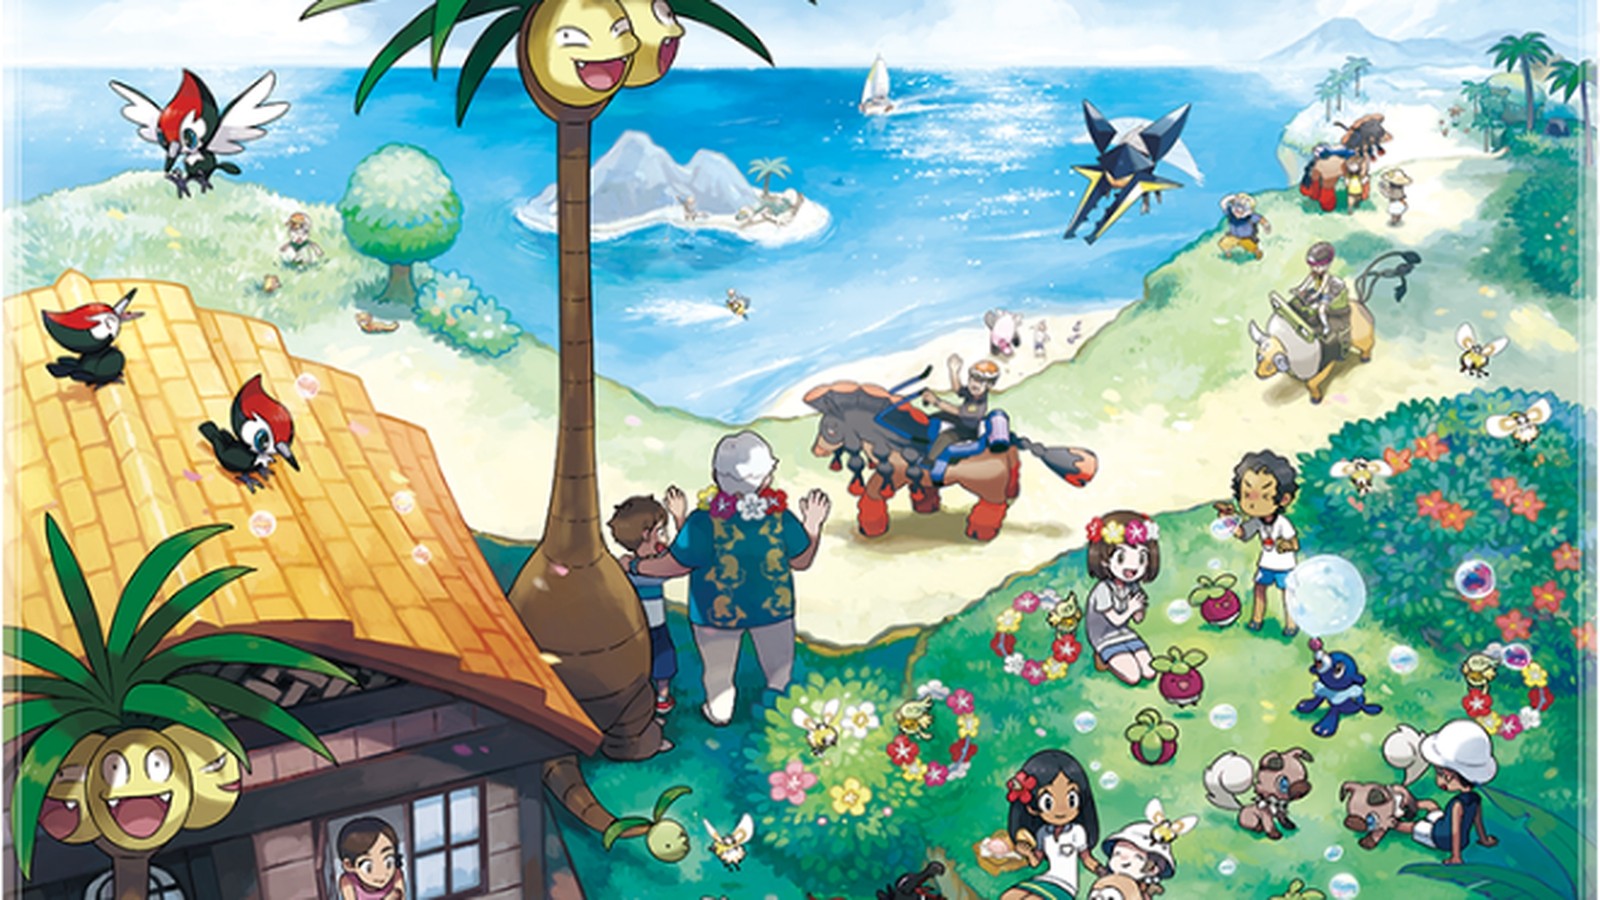 Pokémon Sun & Moon: visual e descrição dos personagens > [PLG]